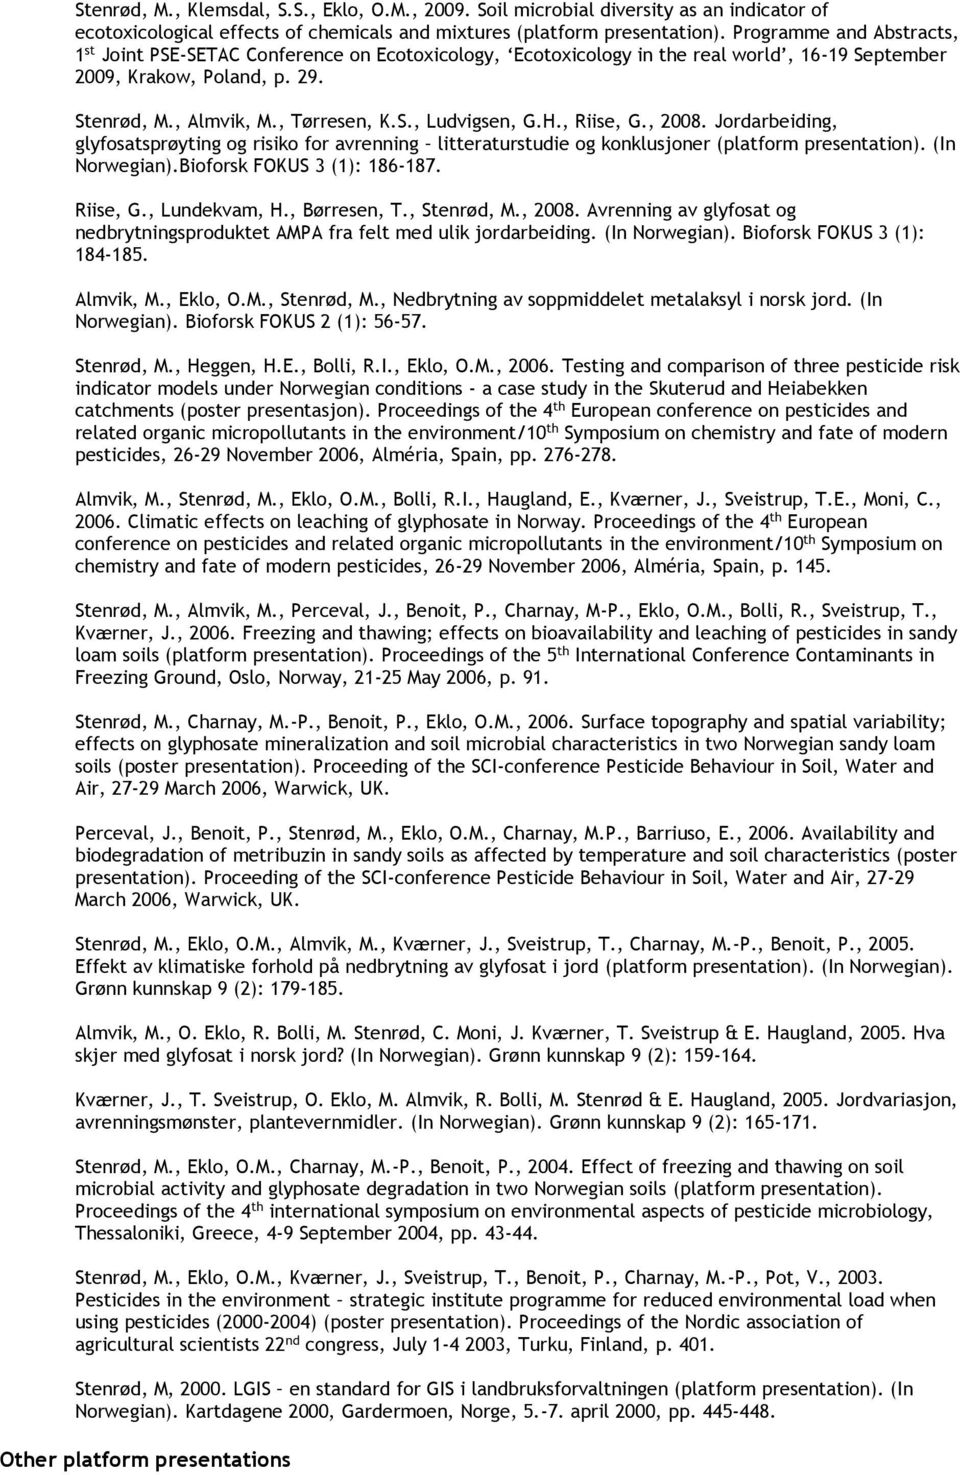 H., Riise, G., 2008. Jordarbeiding, glyfosatsprøyting og risiko for avrenning litteraturstudie og konklusjoner (platform presentation). (In Norwegian).Bioforsk FOKUS 3 (1): 186-187. Riise, G., Lundekvam, H.